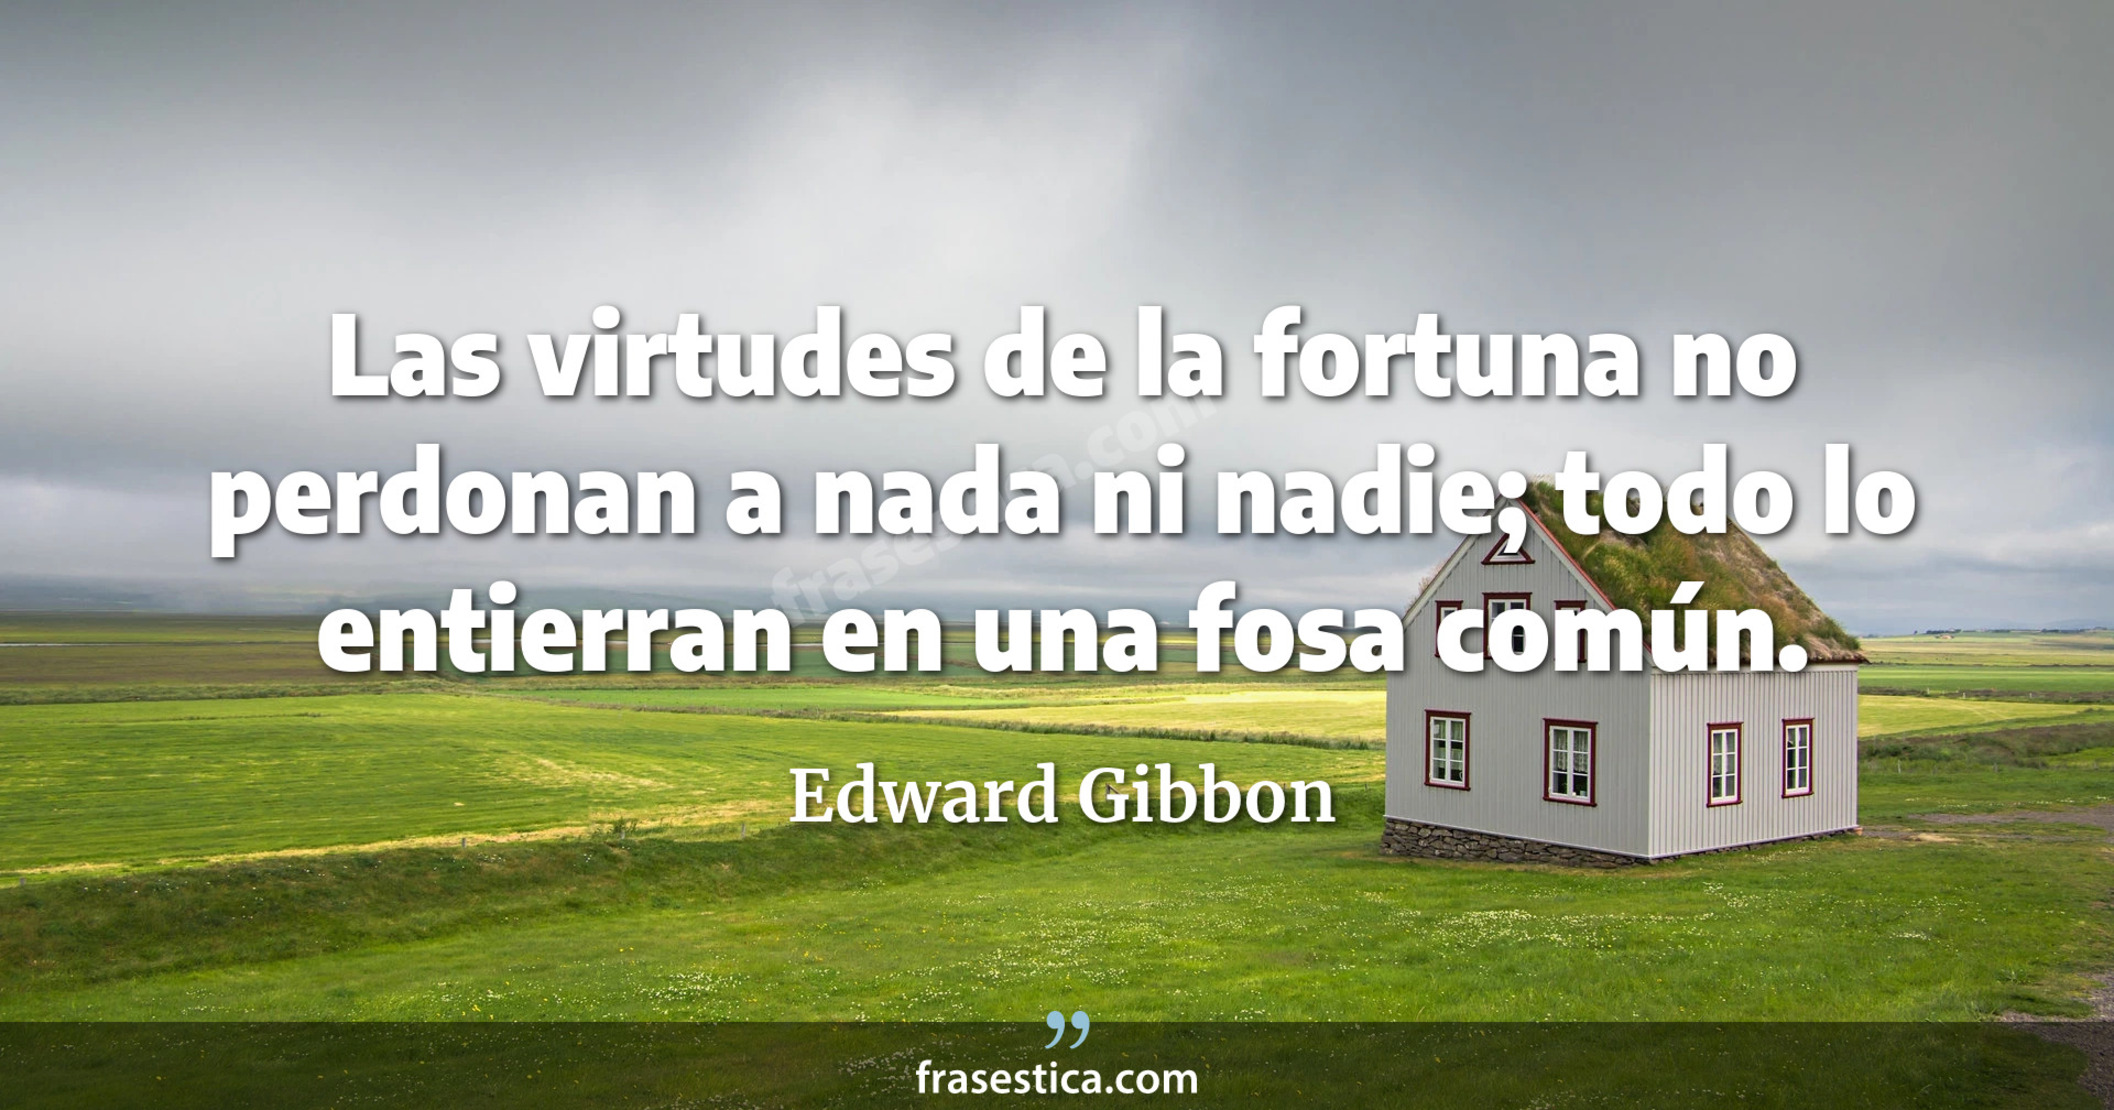 Las virtudes de la fortuna no perdonan a nada ni nadie; todo lo entierran en una fosa común. - Edward Gibbon